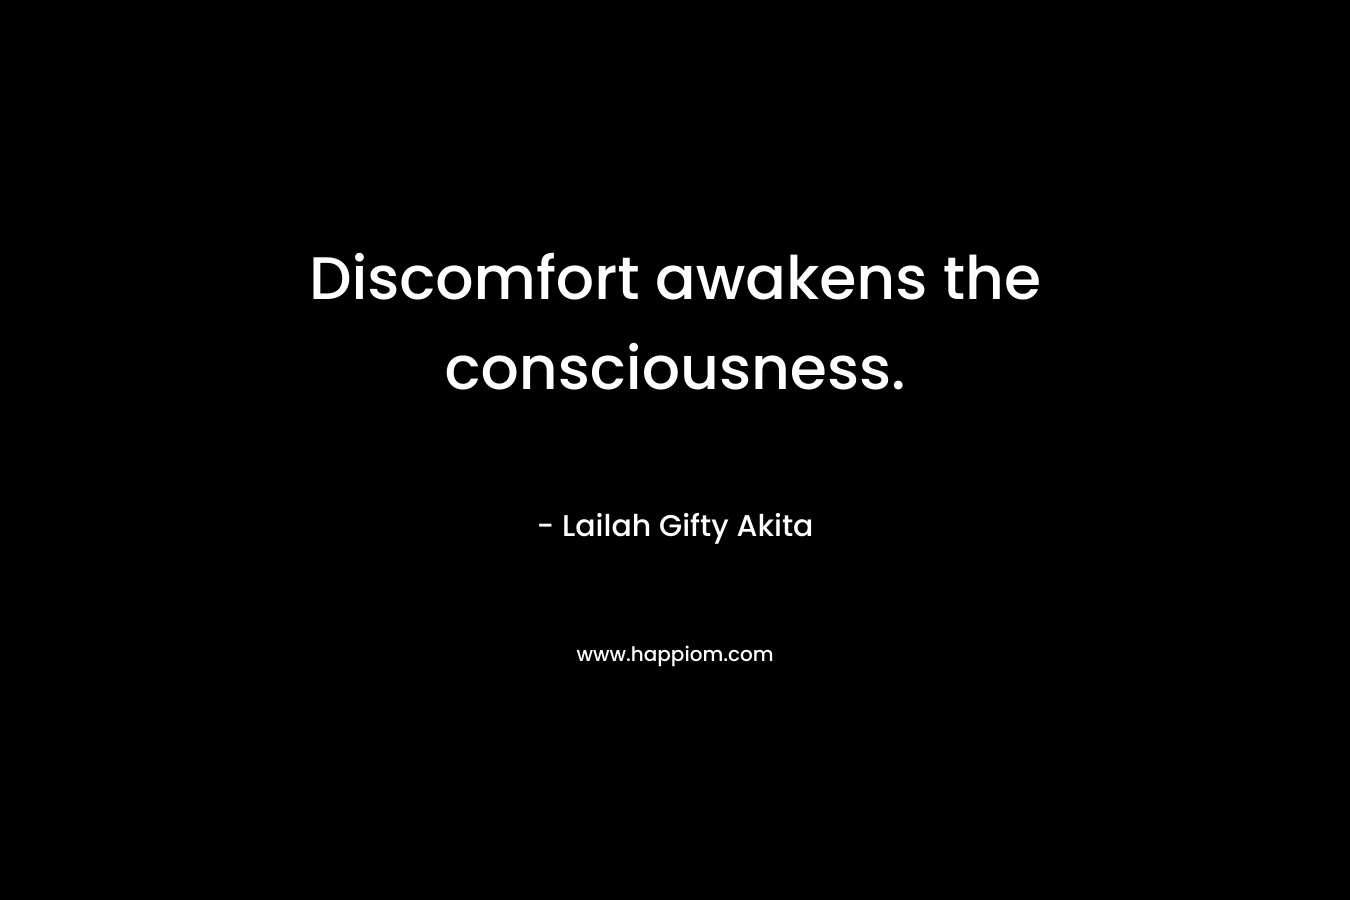 Discomfort awakens the consciousness.